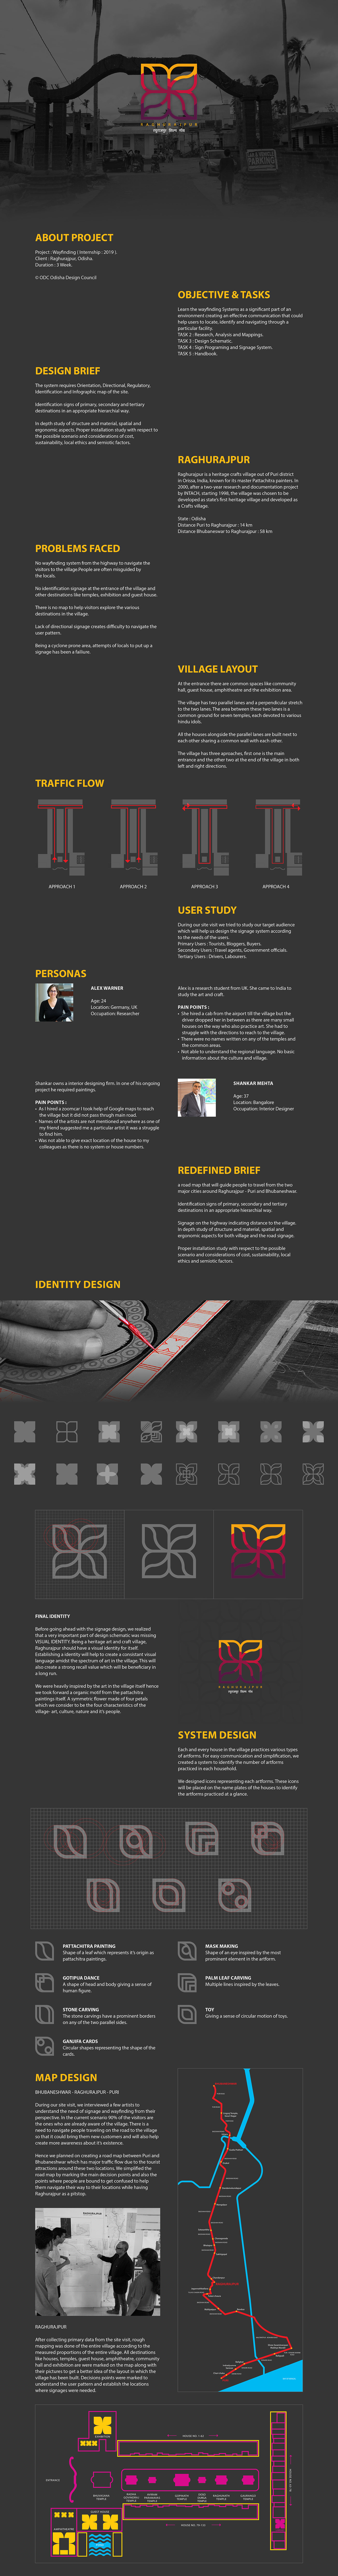 Logo Design visual identity Brand Design wayfinding system Signage wayfinding icons iconography infographic